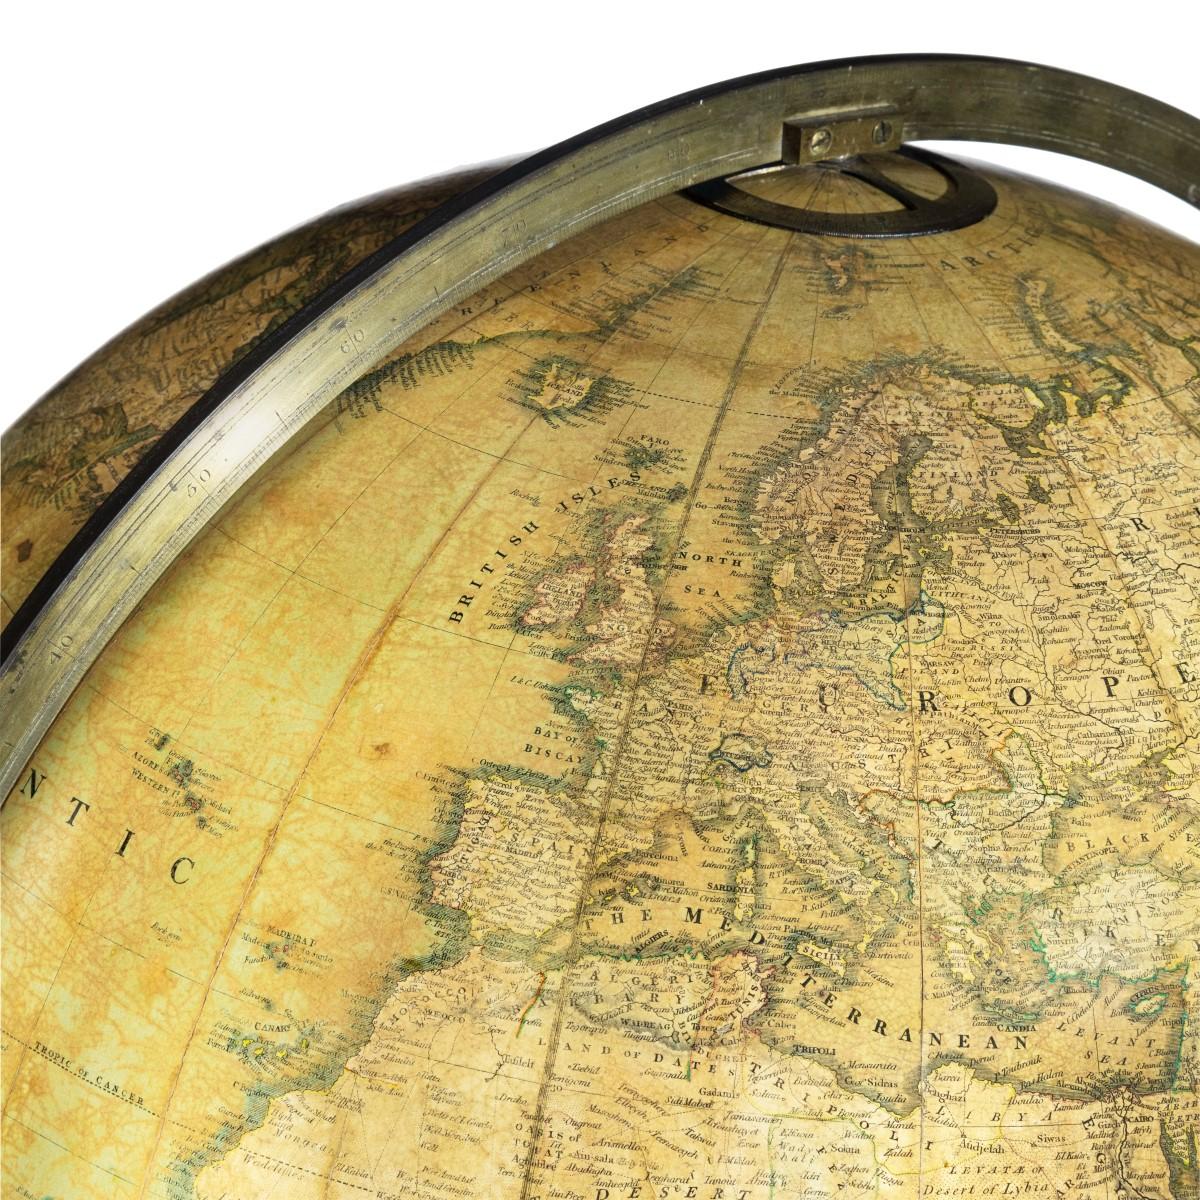 A William IV 20 inch terrestrial globe by Cruchley